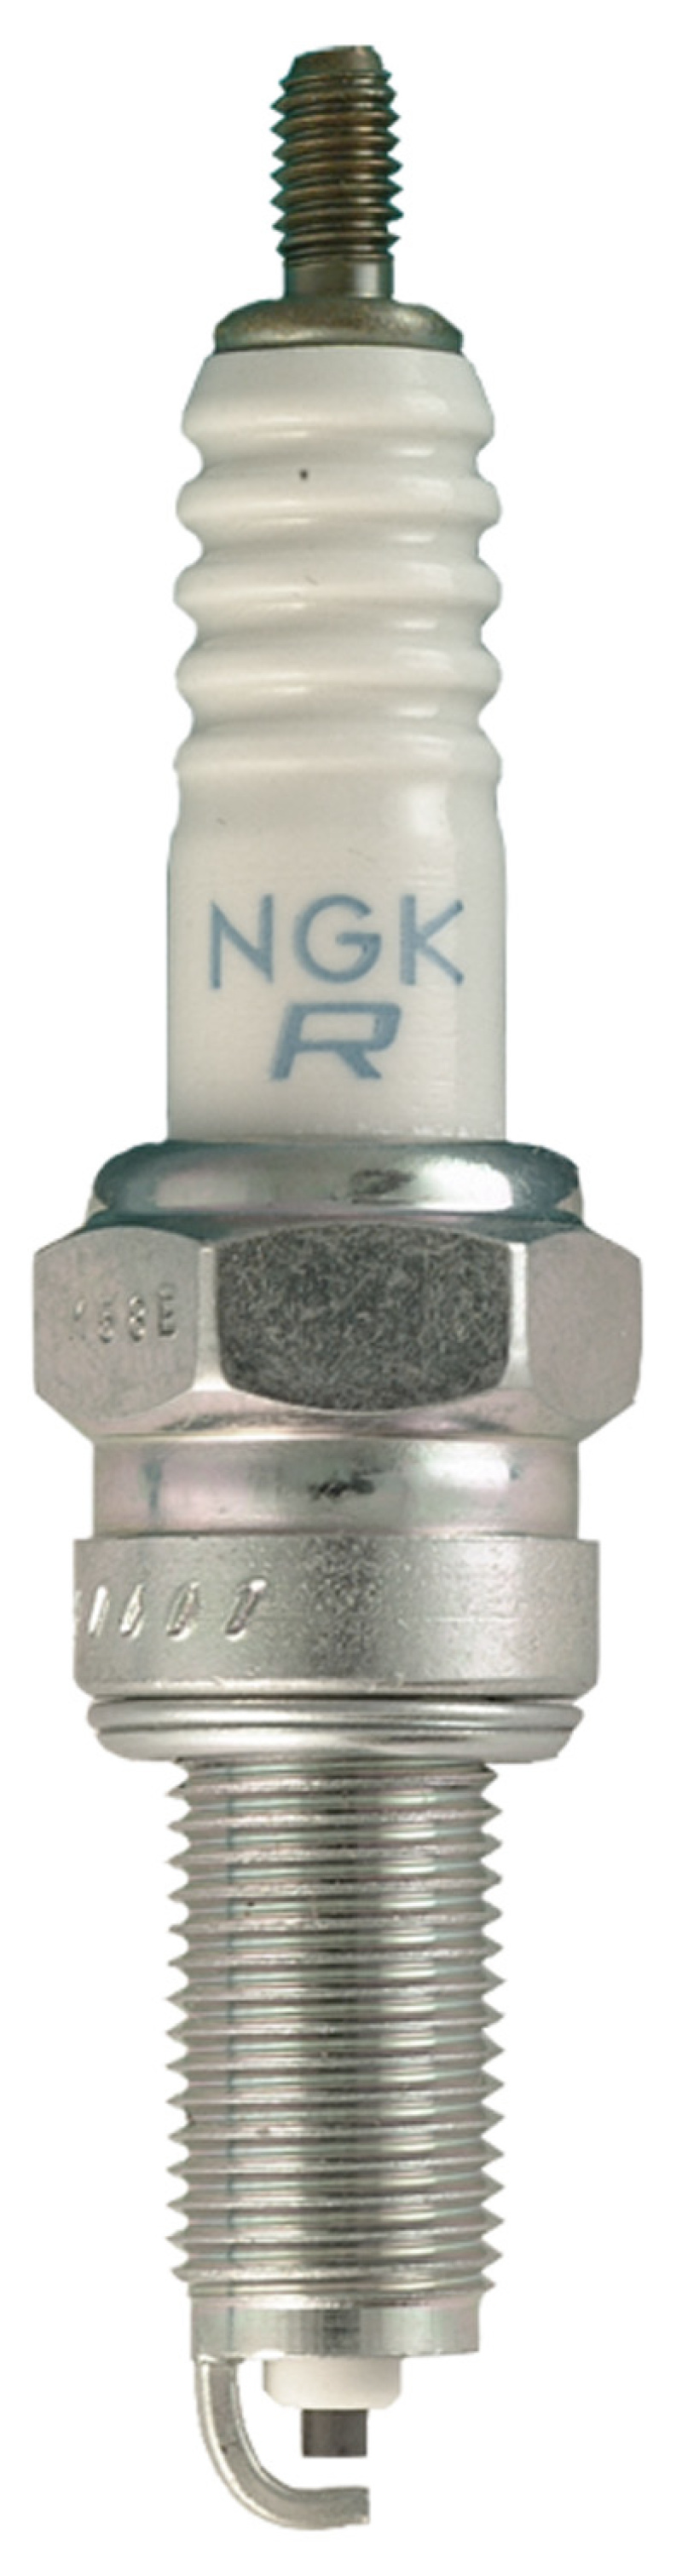 NGK Standard Spark Plug Box of 10 (CPR6EA-9S) - 1582